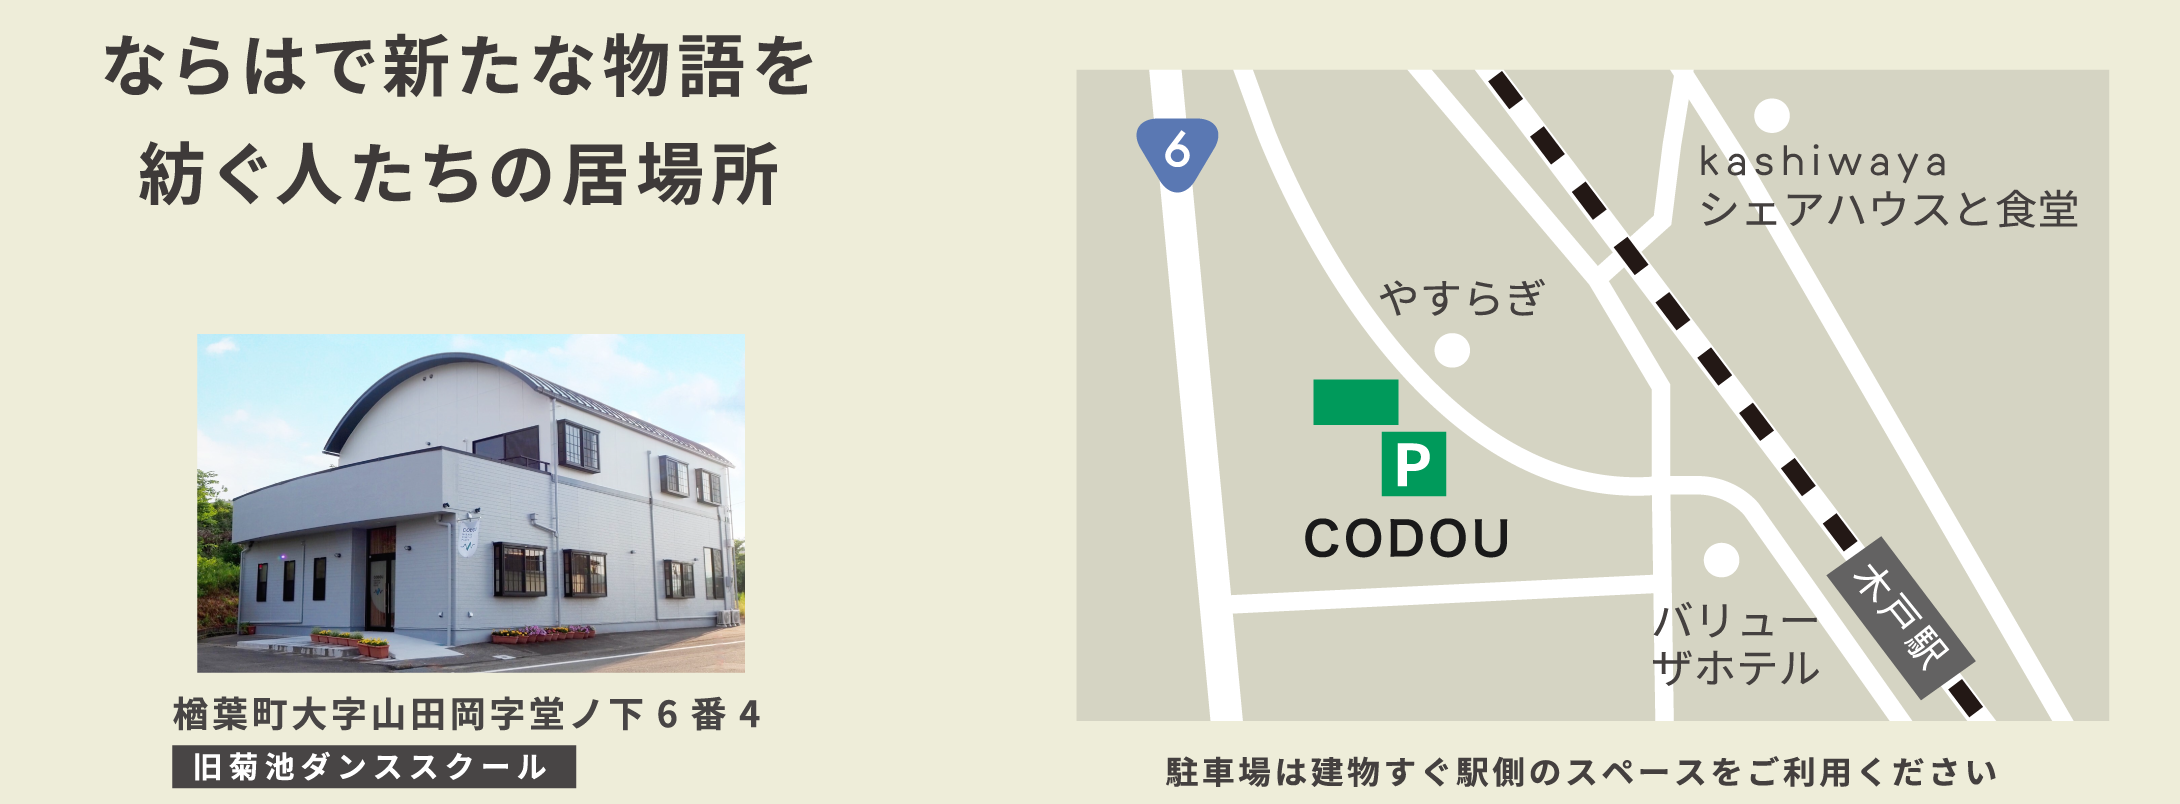 楢葉町大字山田岡字堂ノ下6番4 旧菊池ダンススクール　駐車場は建物すぐ駅側のスペースをご利用ください。